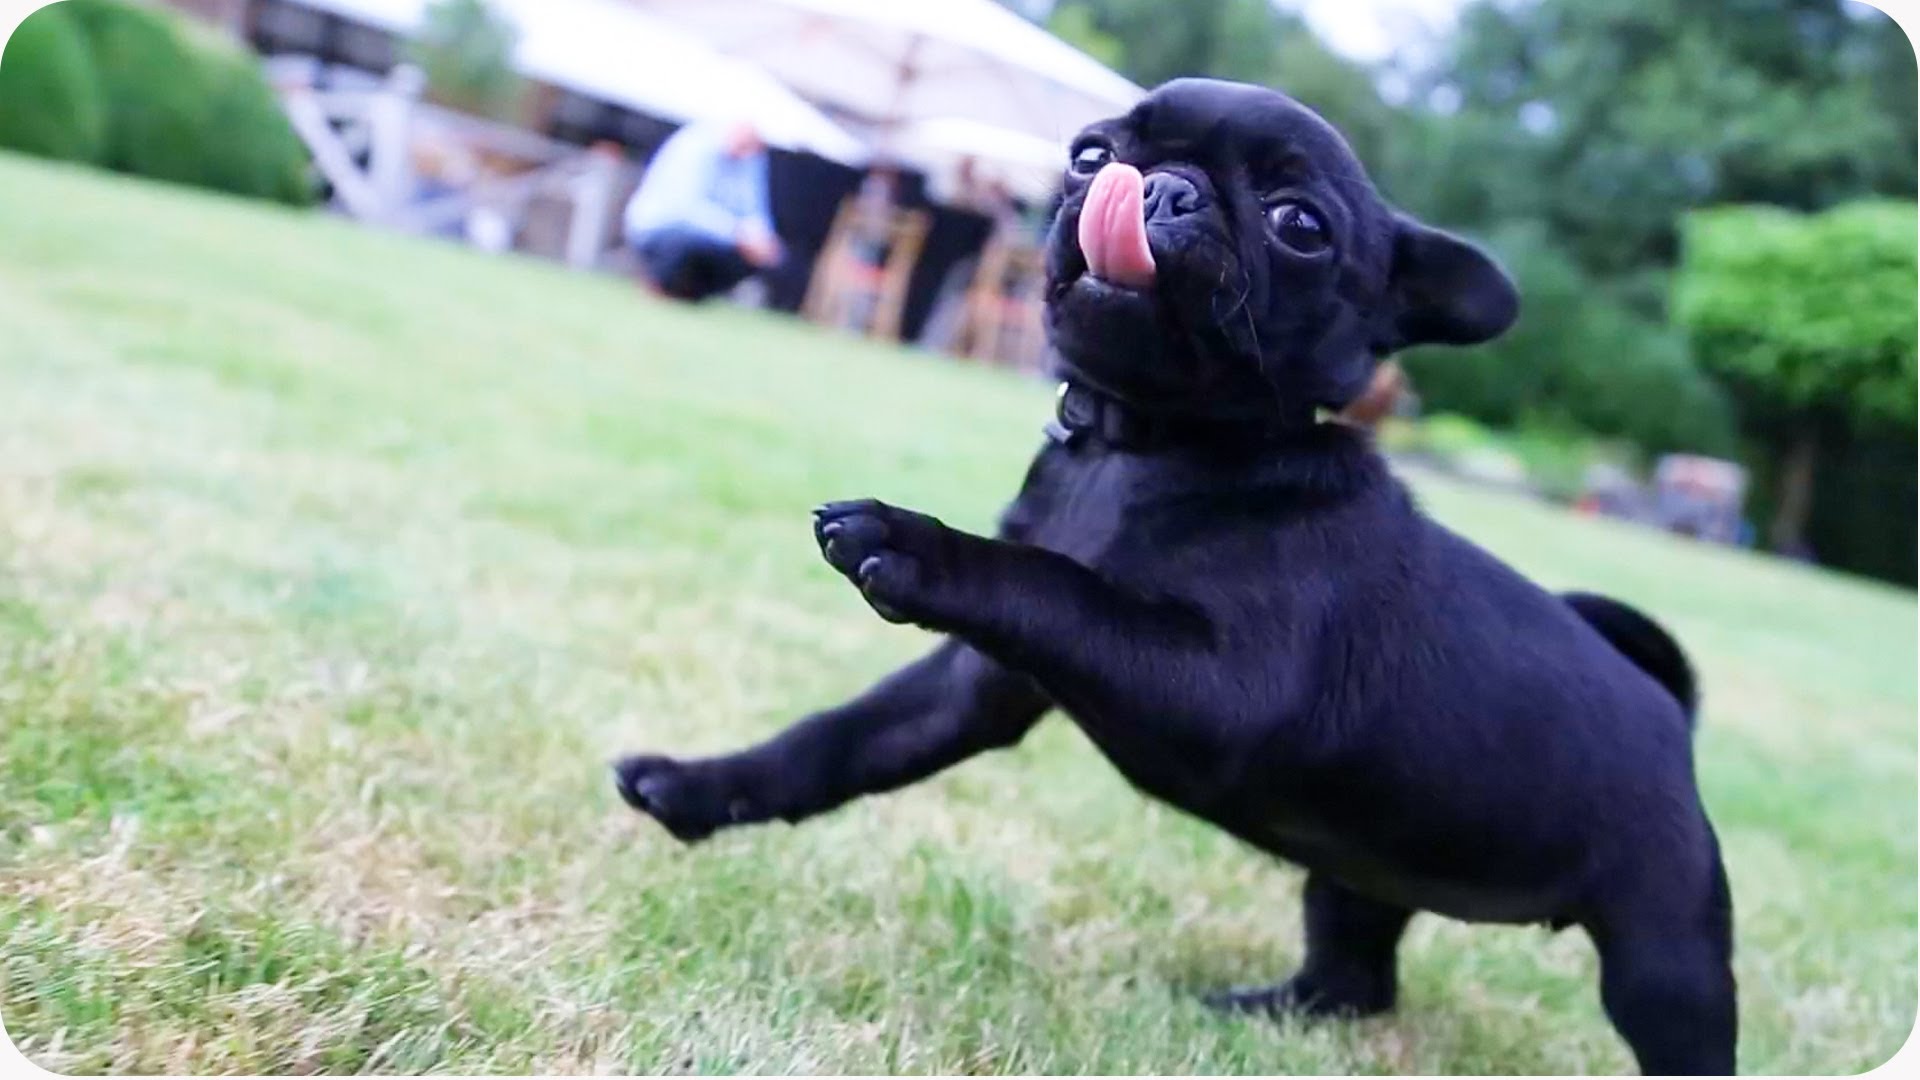 Black Pug Puppy Playing In Garden